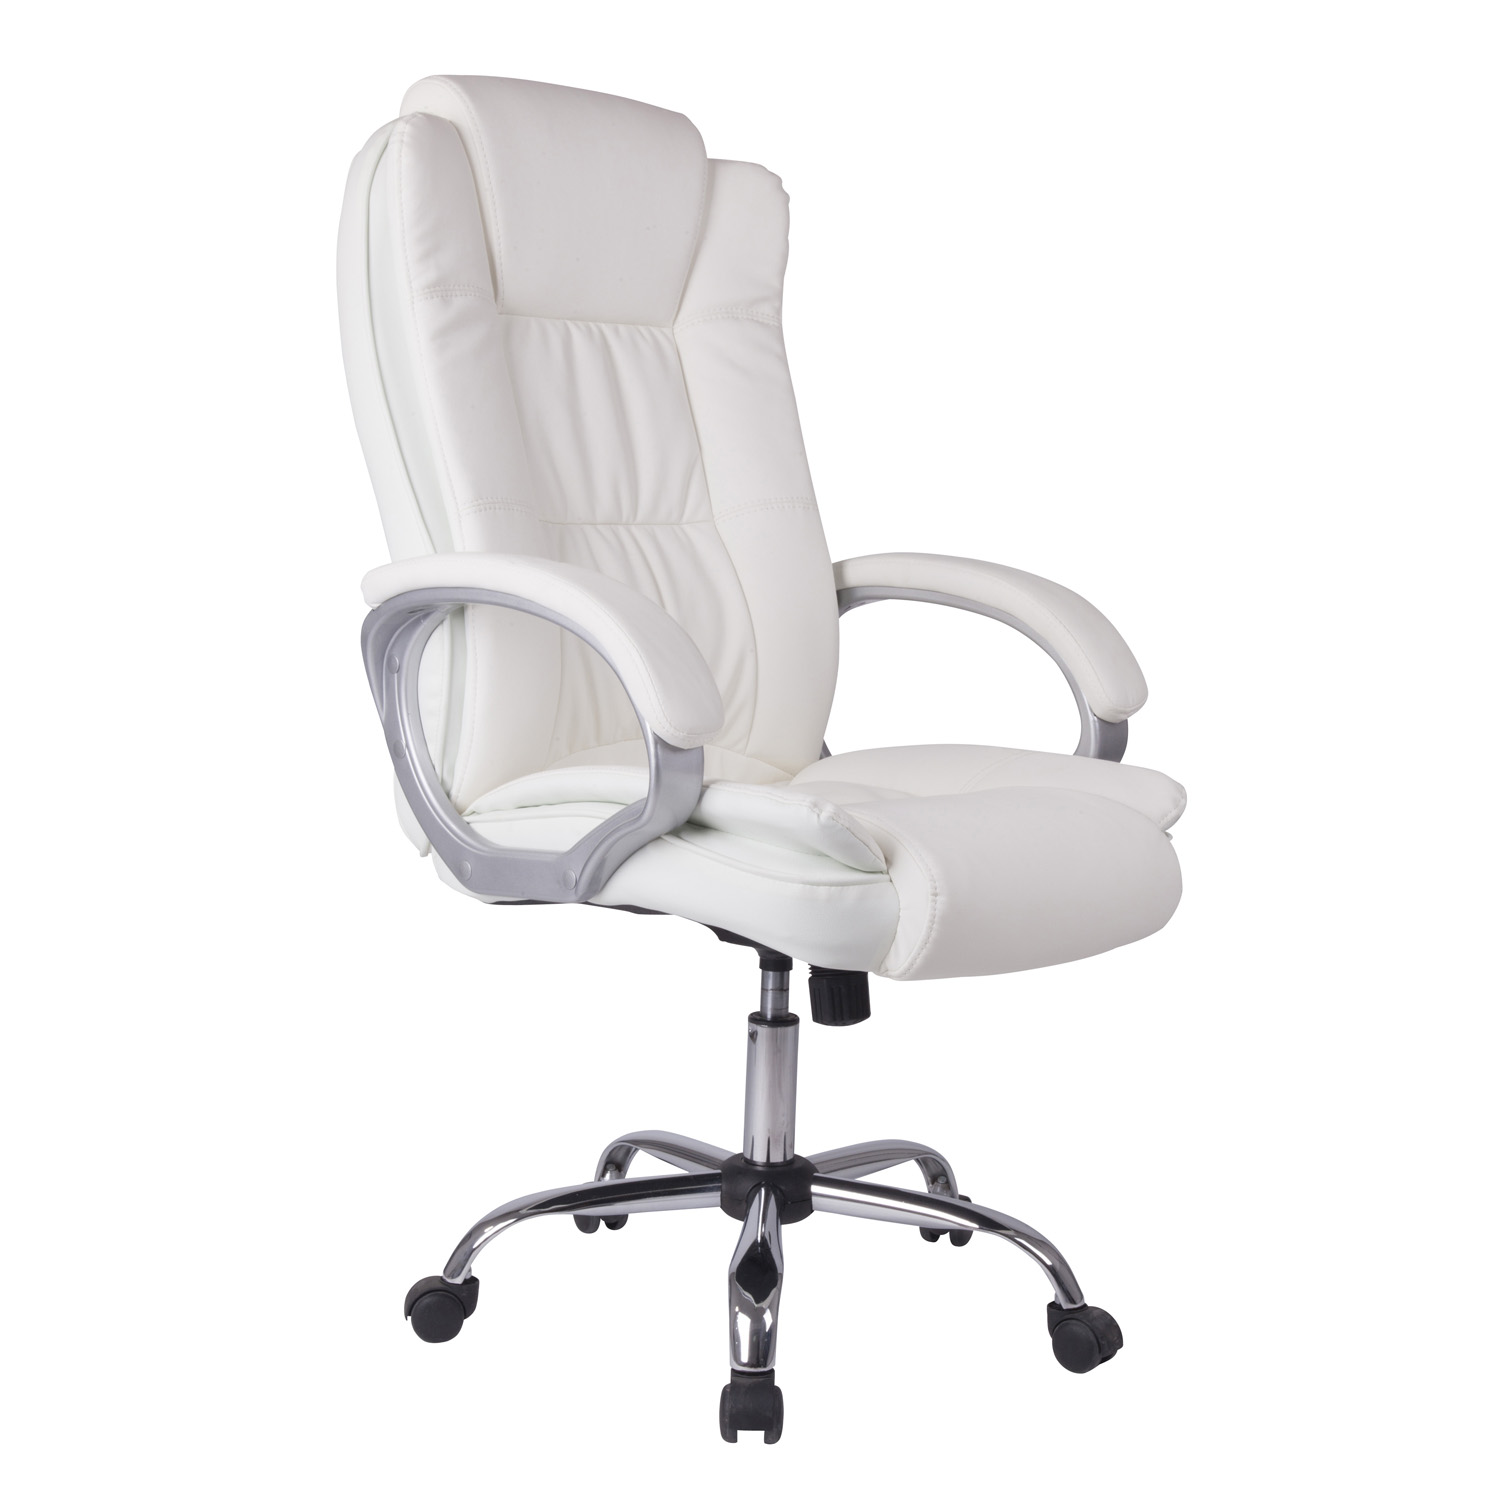 Chaise de bureau elevable et Fauteuil inclinable en simili cuir blanc